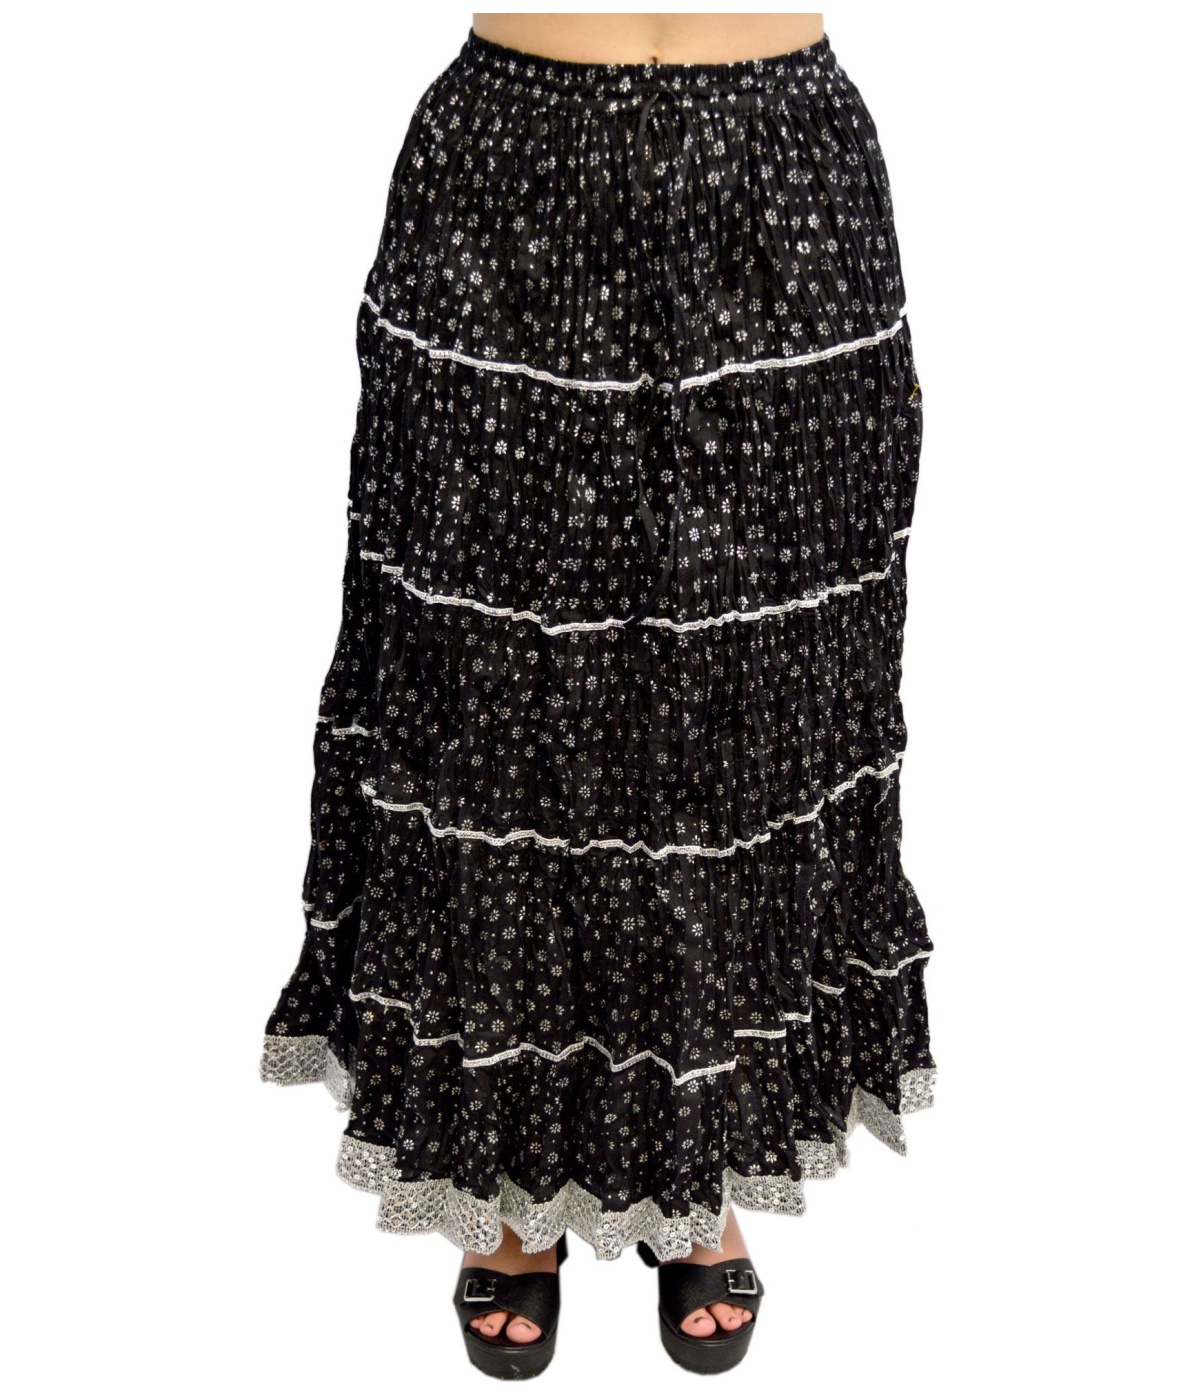  Booti Pattern Long Indian Skirt